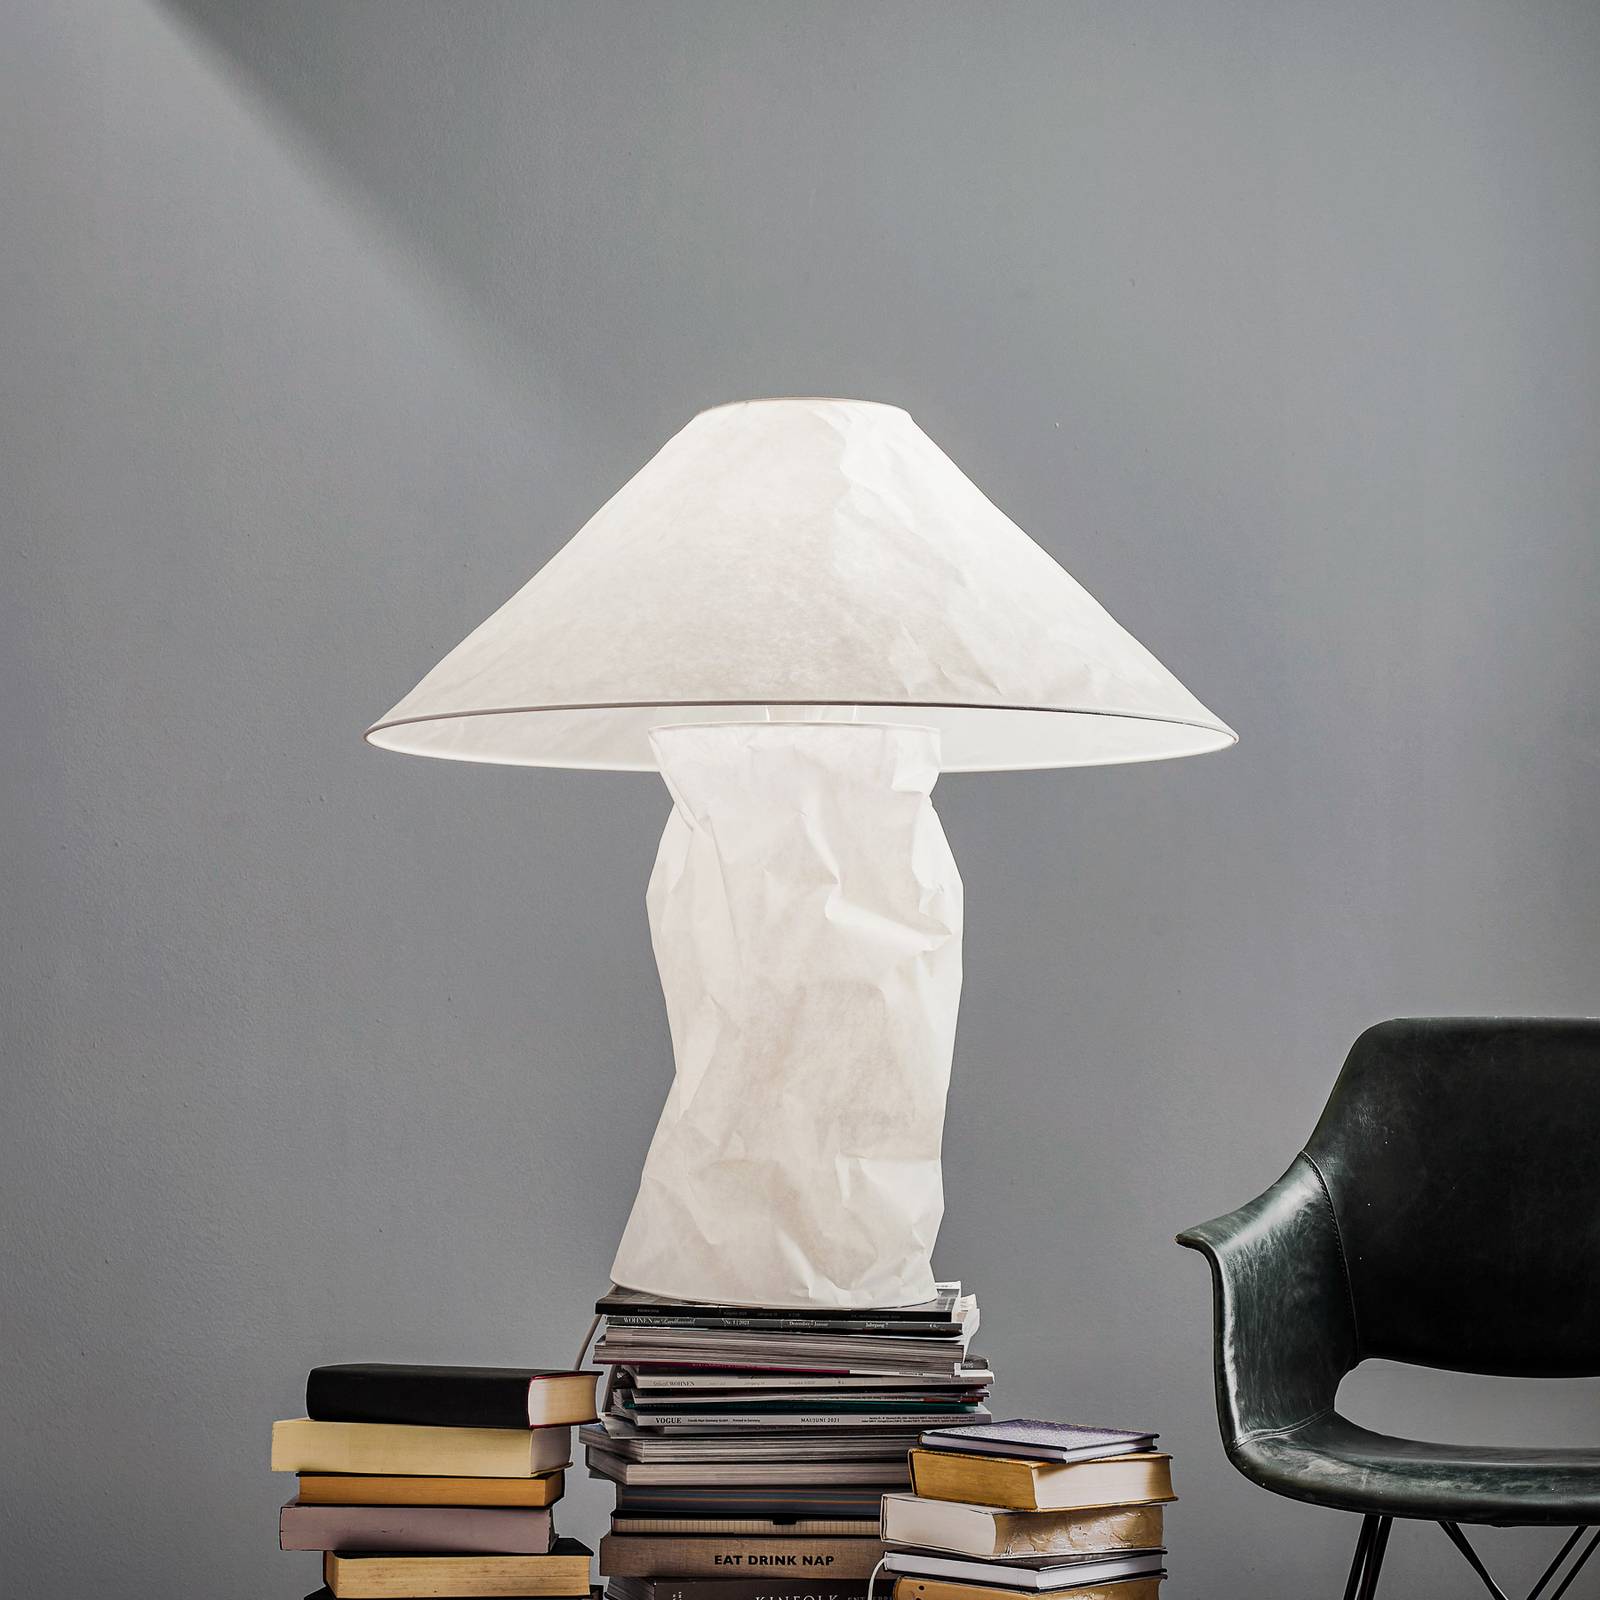 Ingo Maurer Lampampe bordslampa japanskt papper